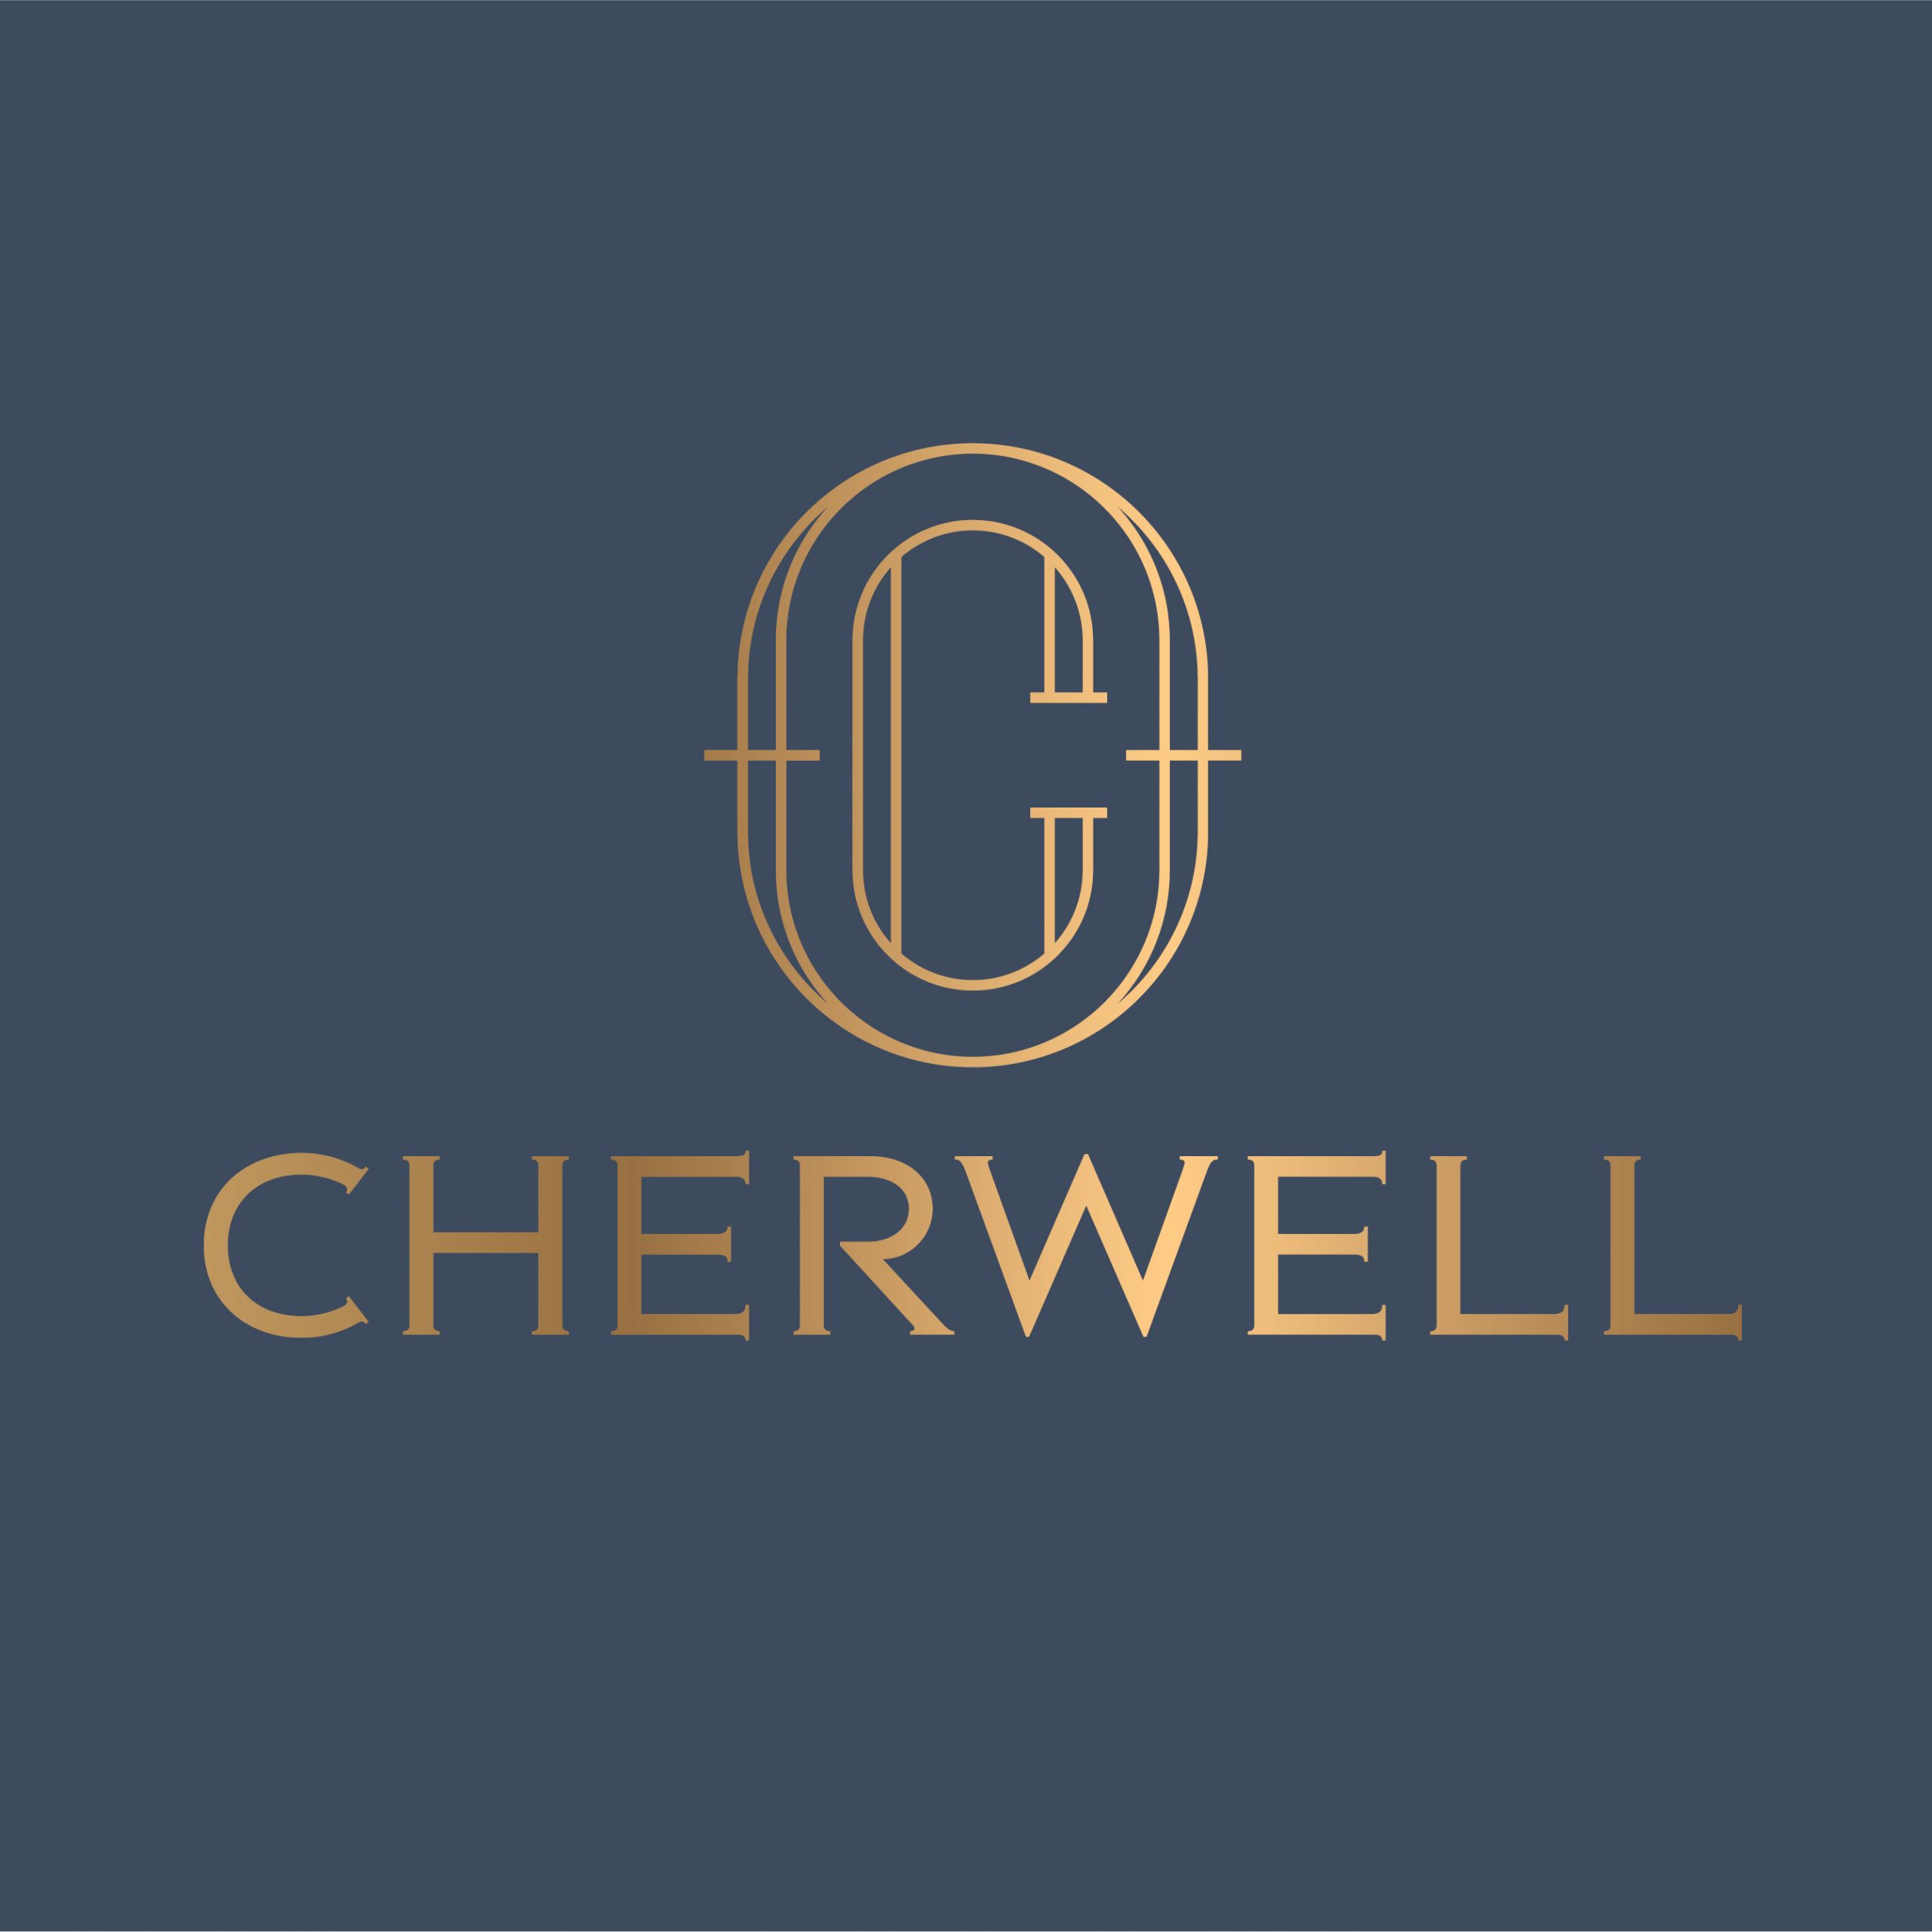 Know more about Cherwell Interiors design company in Dubai, UAE